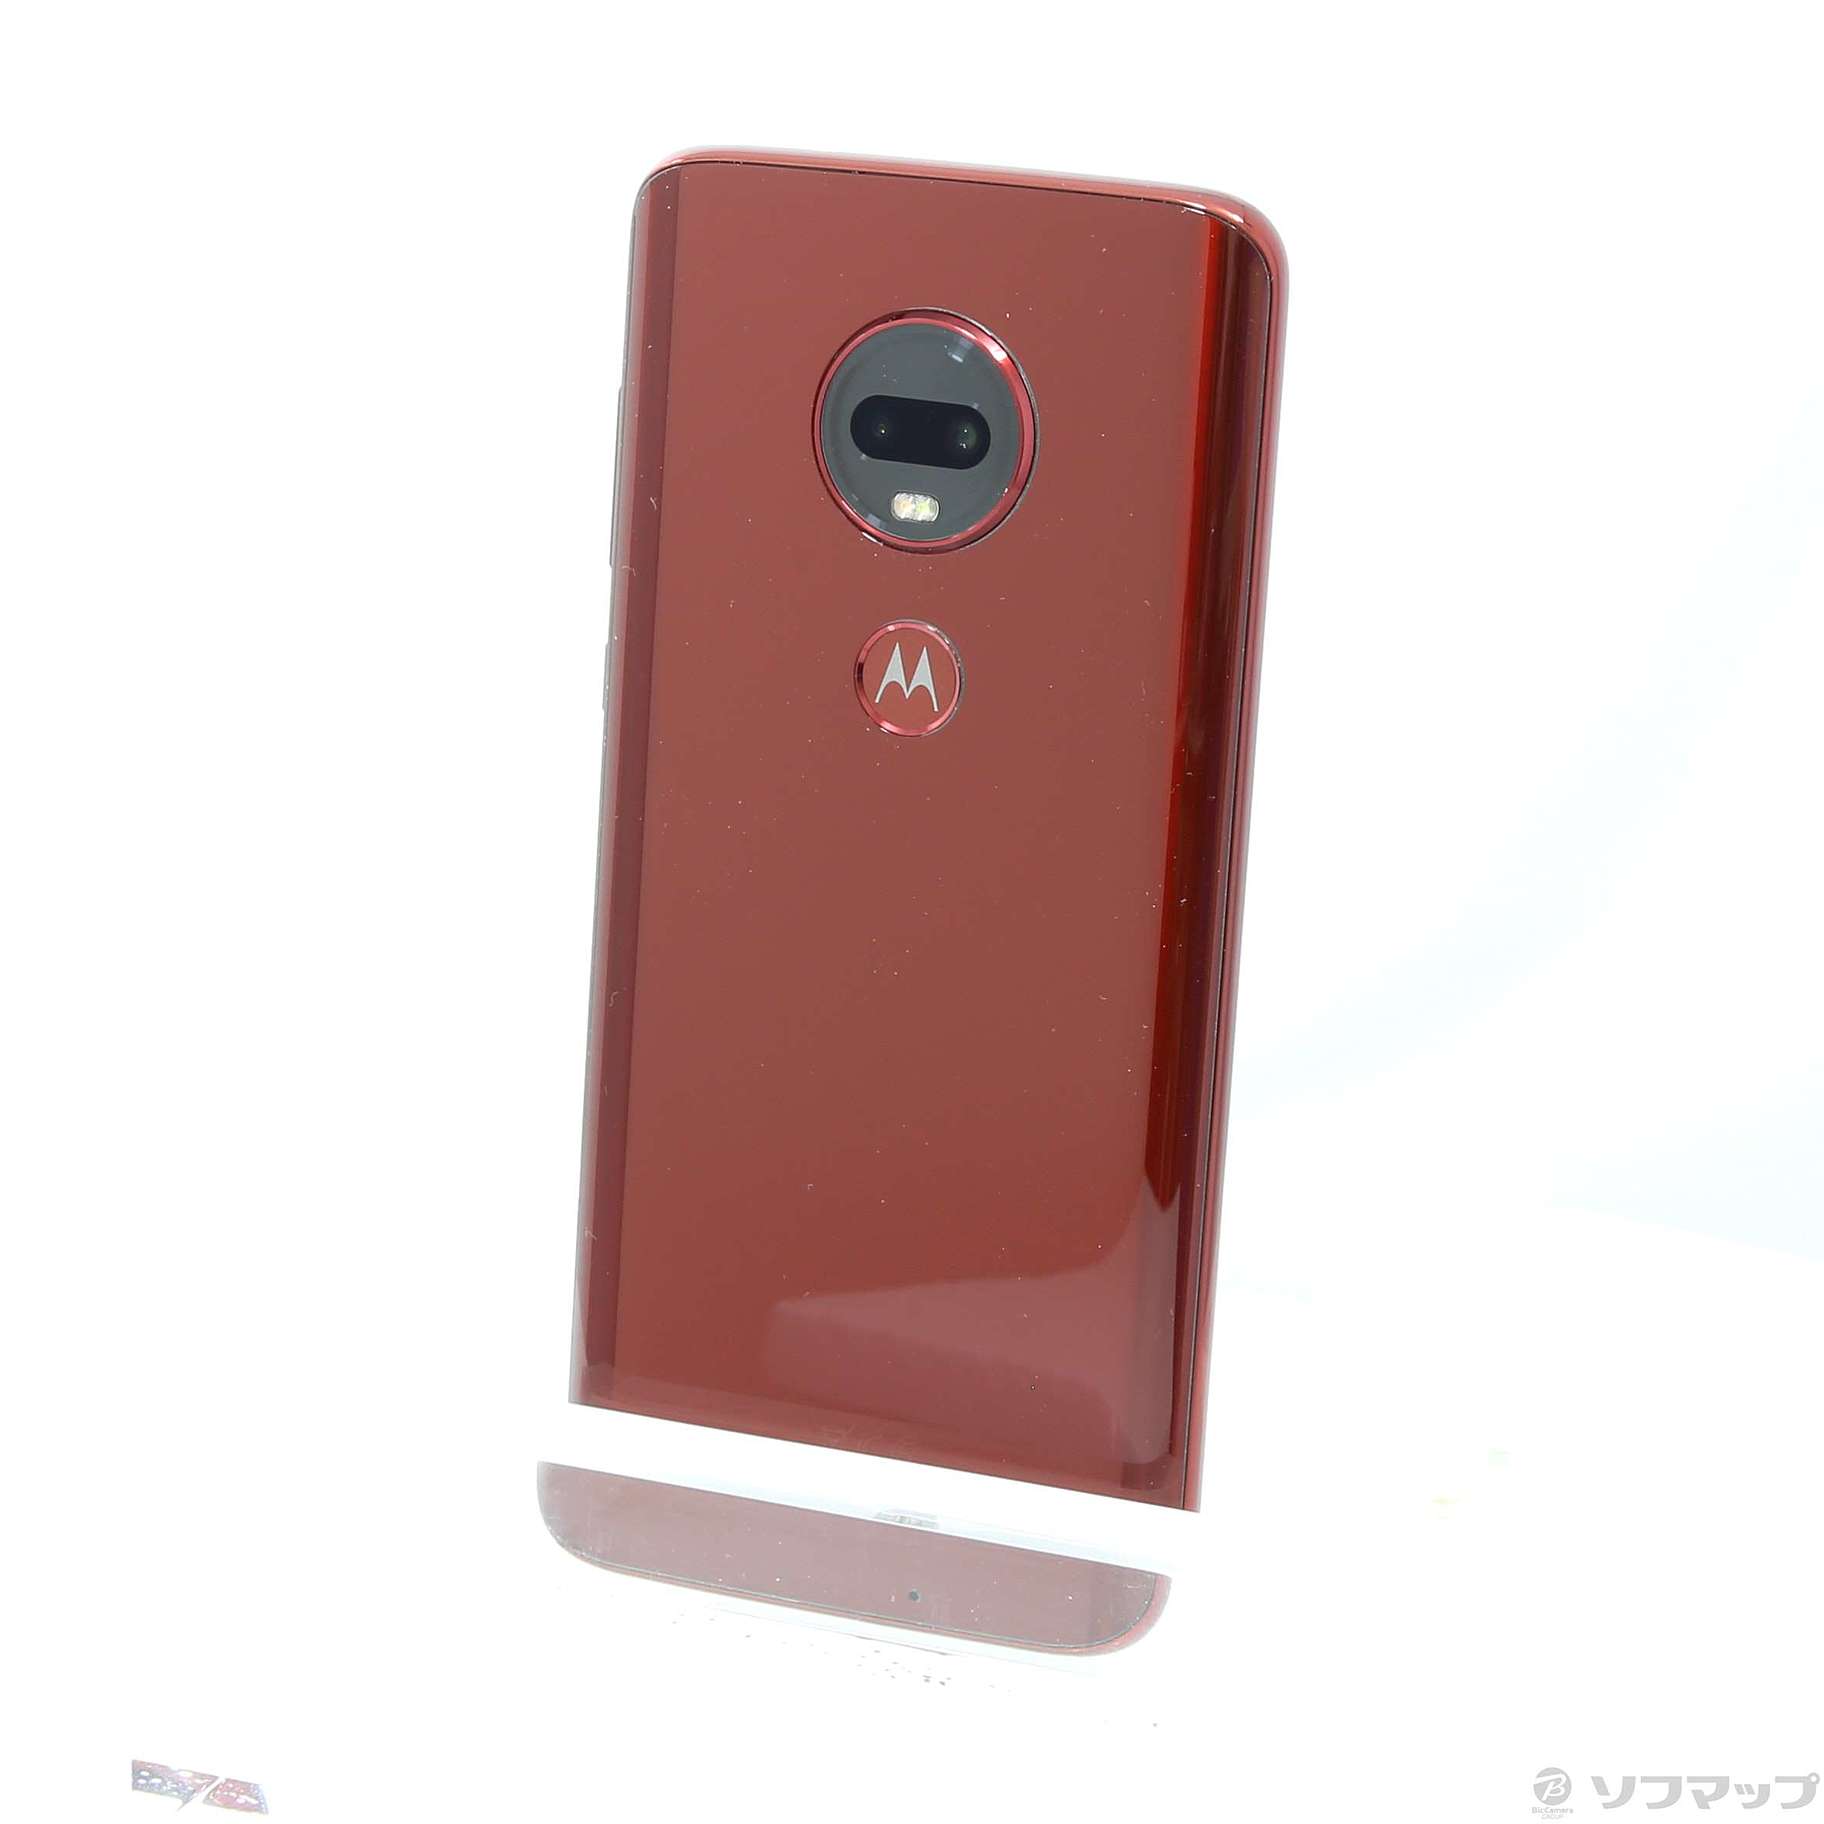 国内版Motorola
Moto G6 Plus
Simフリー美品